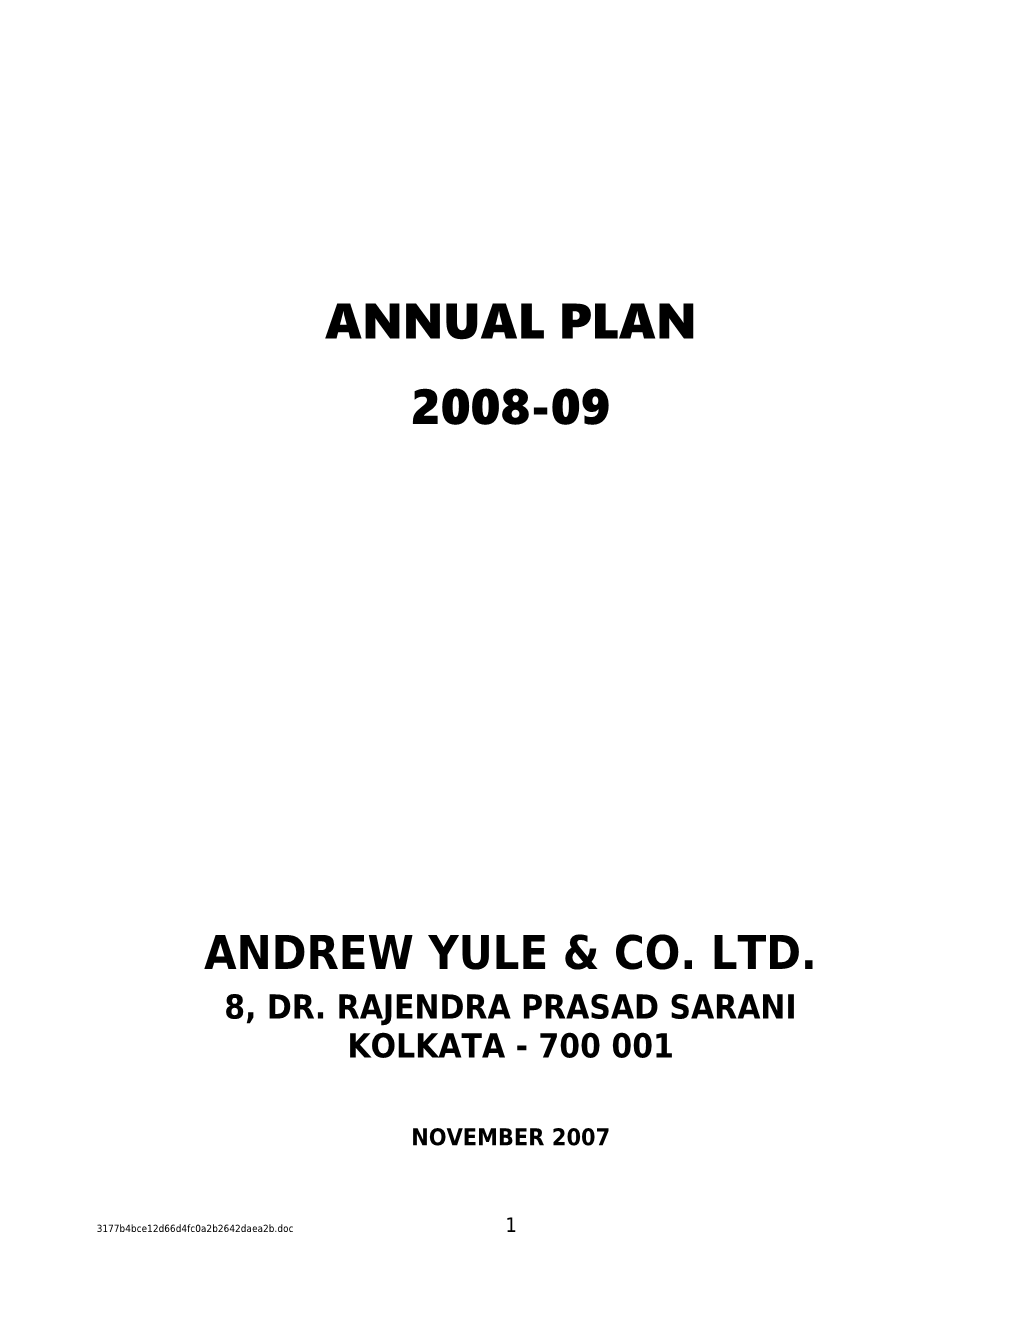 Andrew Yule & Co. Ltd